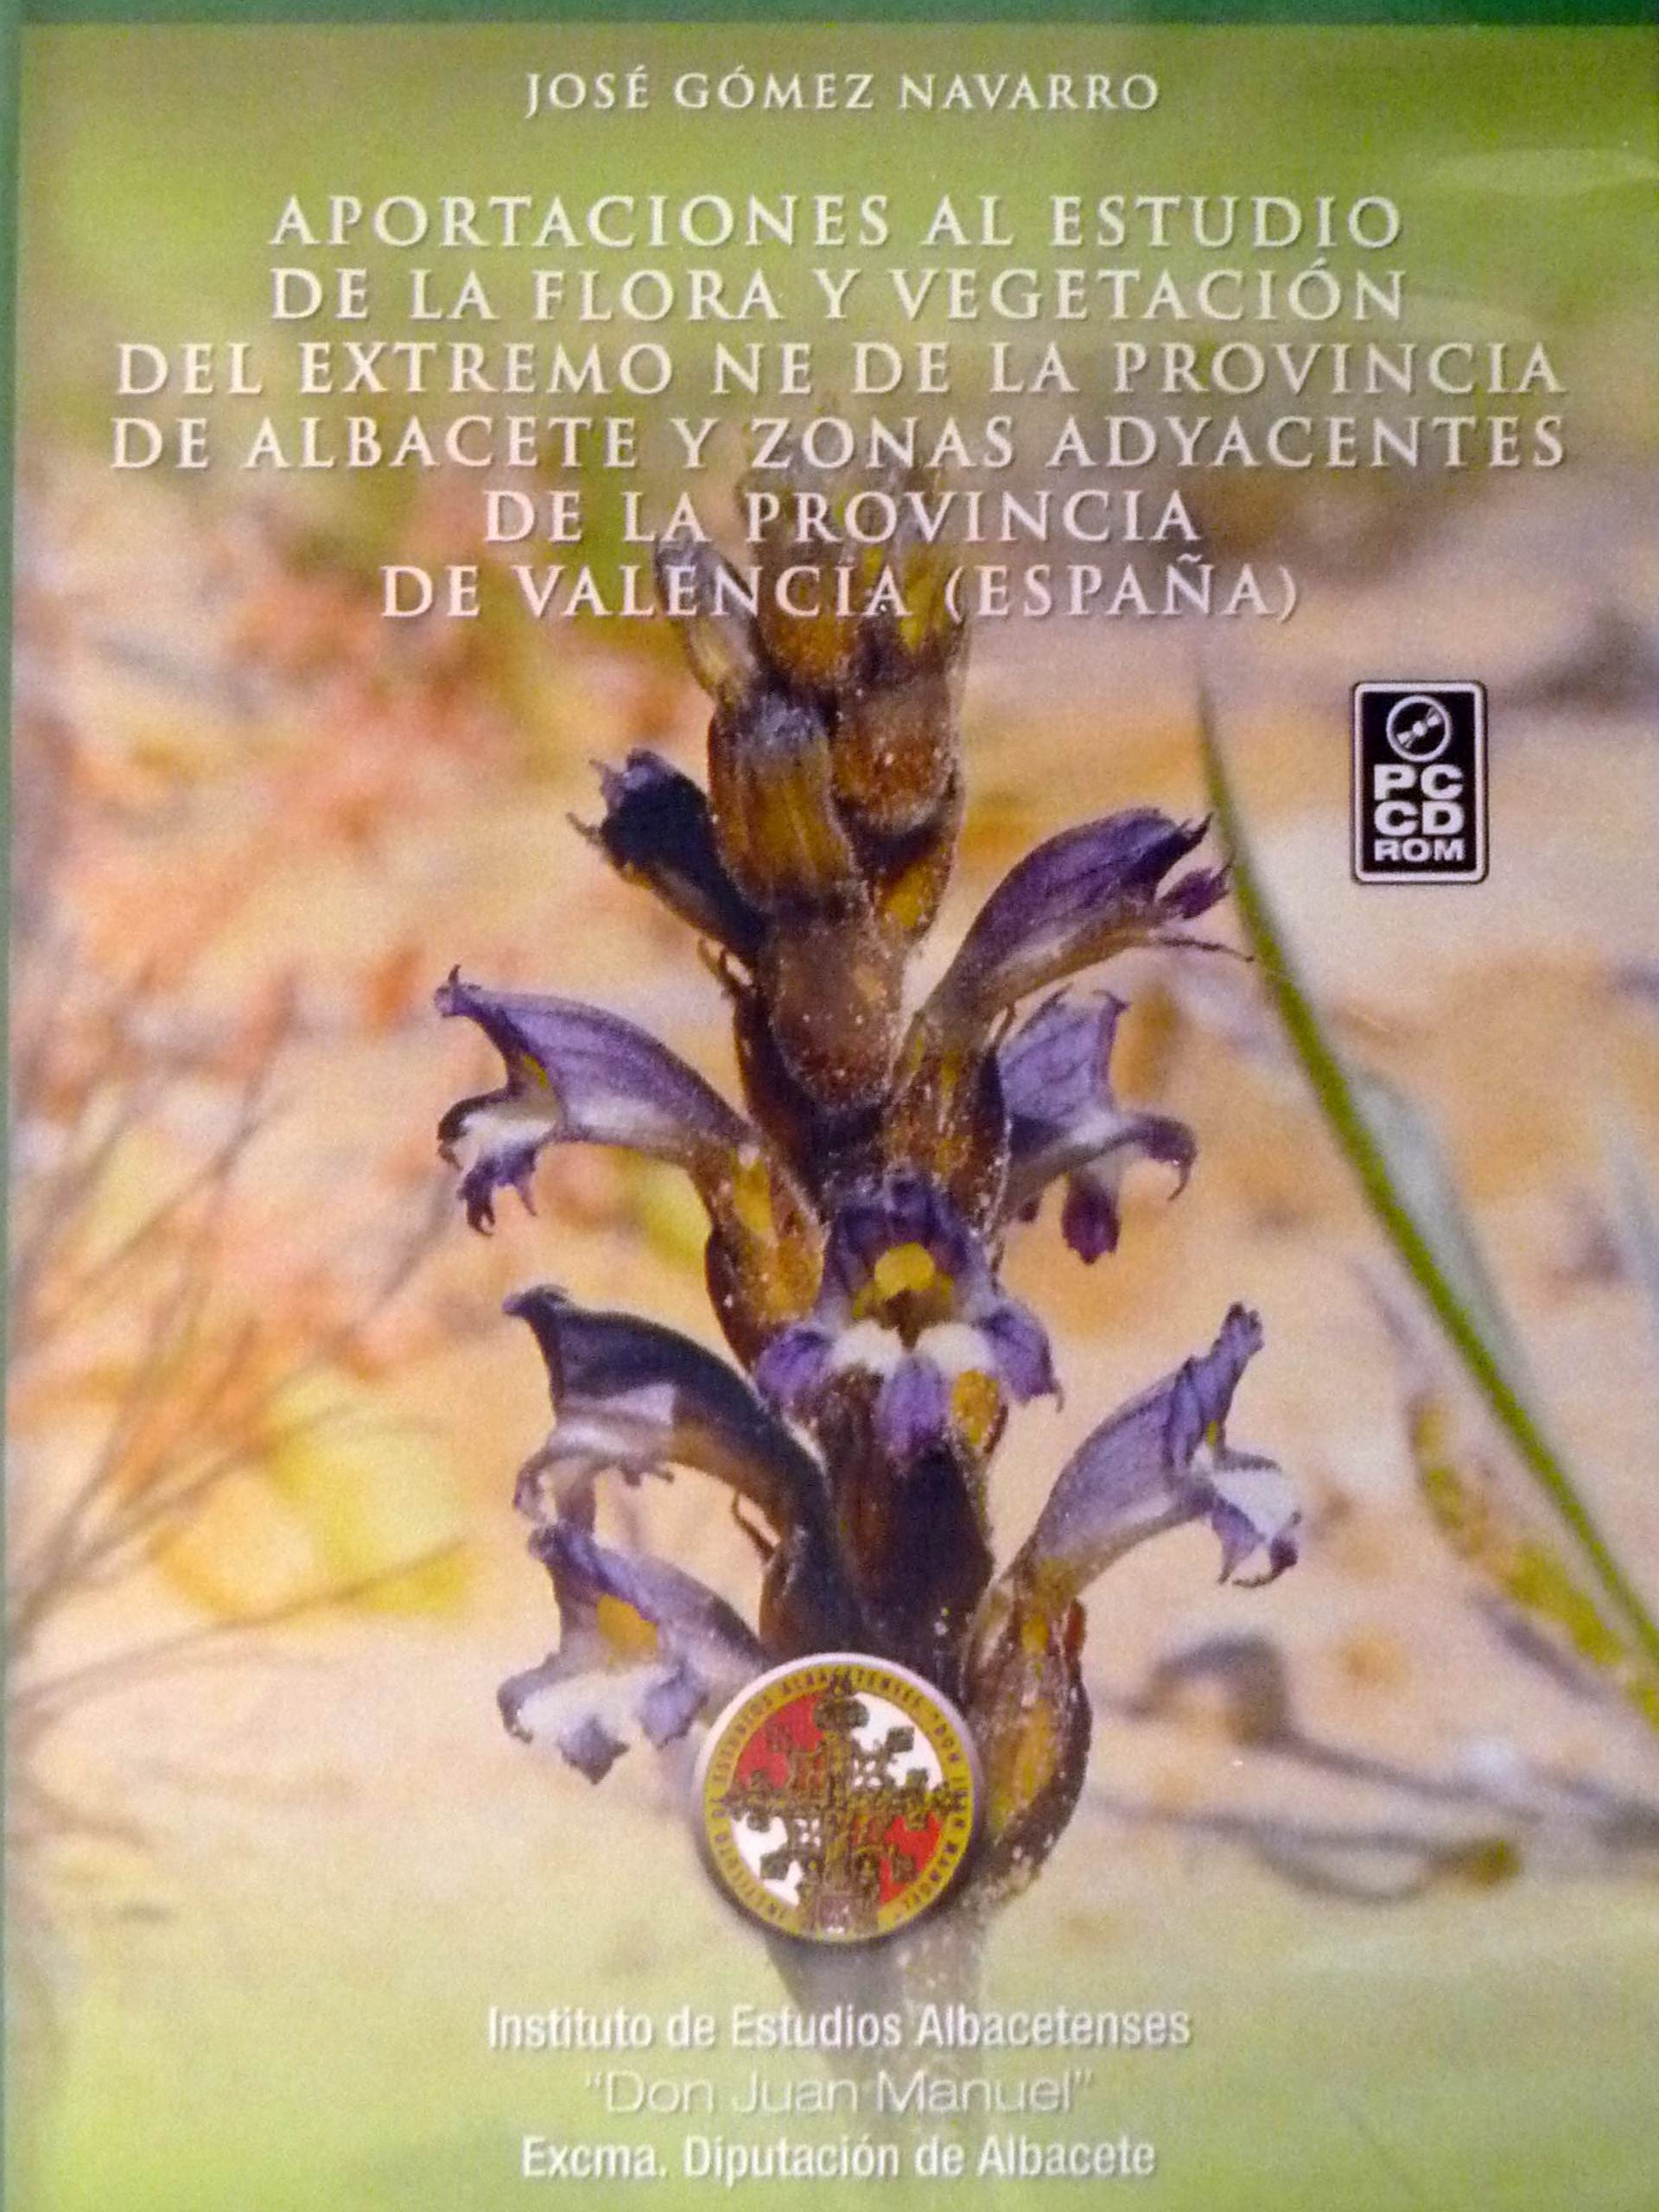 aportaciones-estudio-flora-vegetacion-albacete-valencia